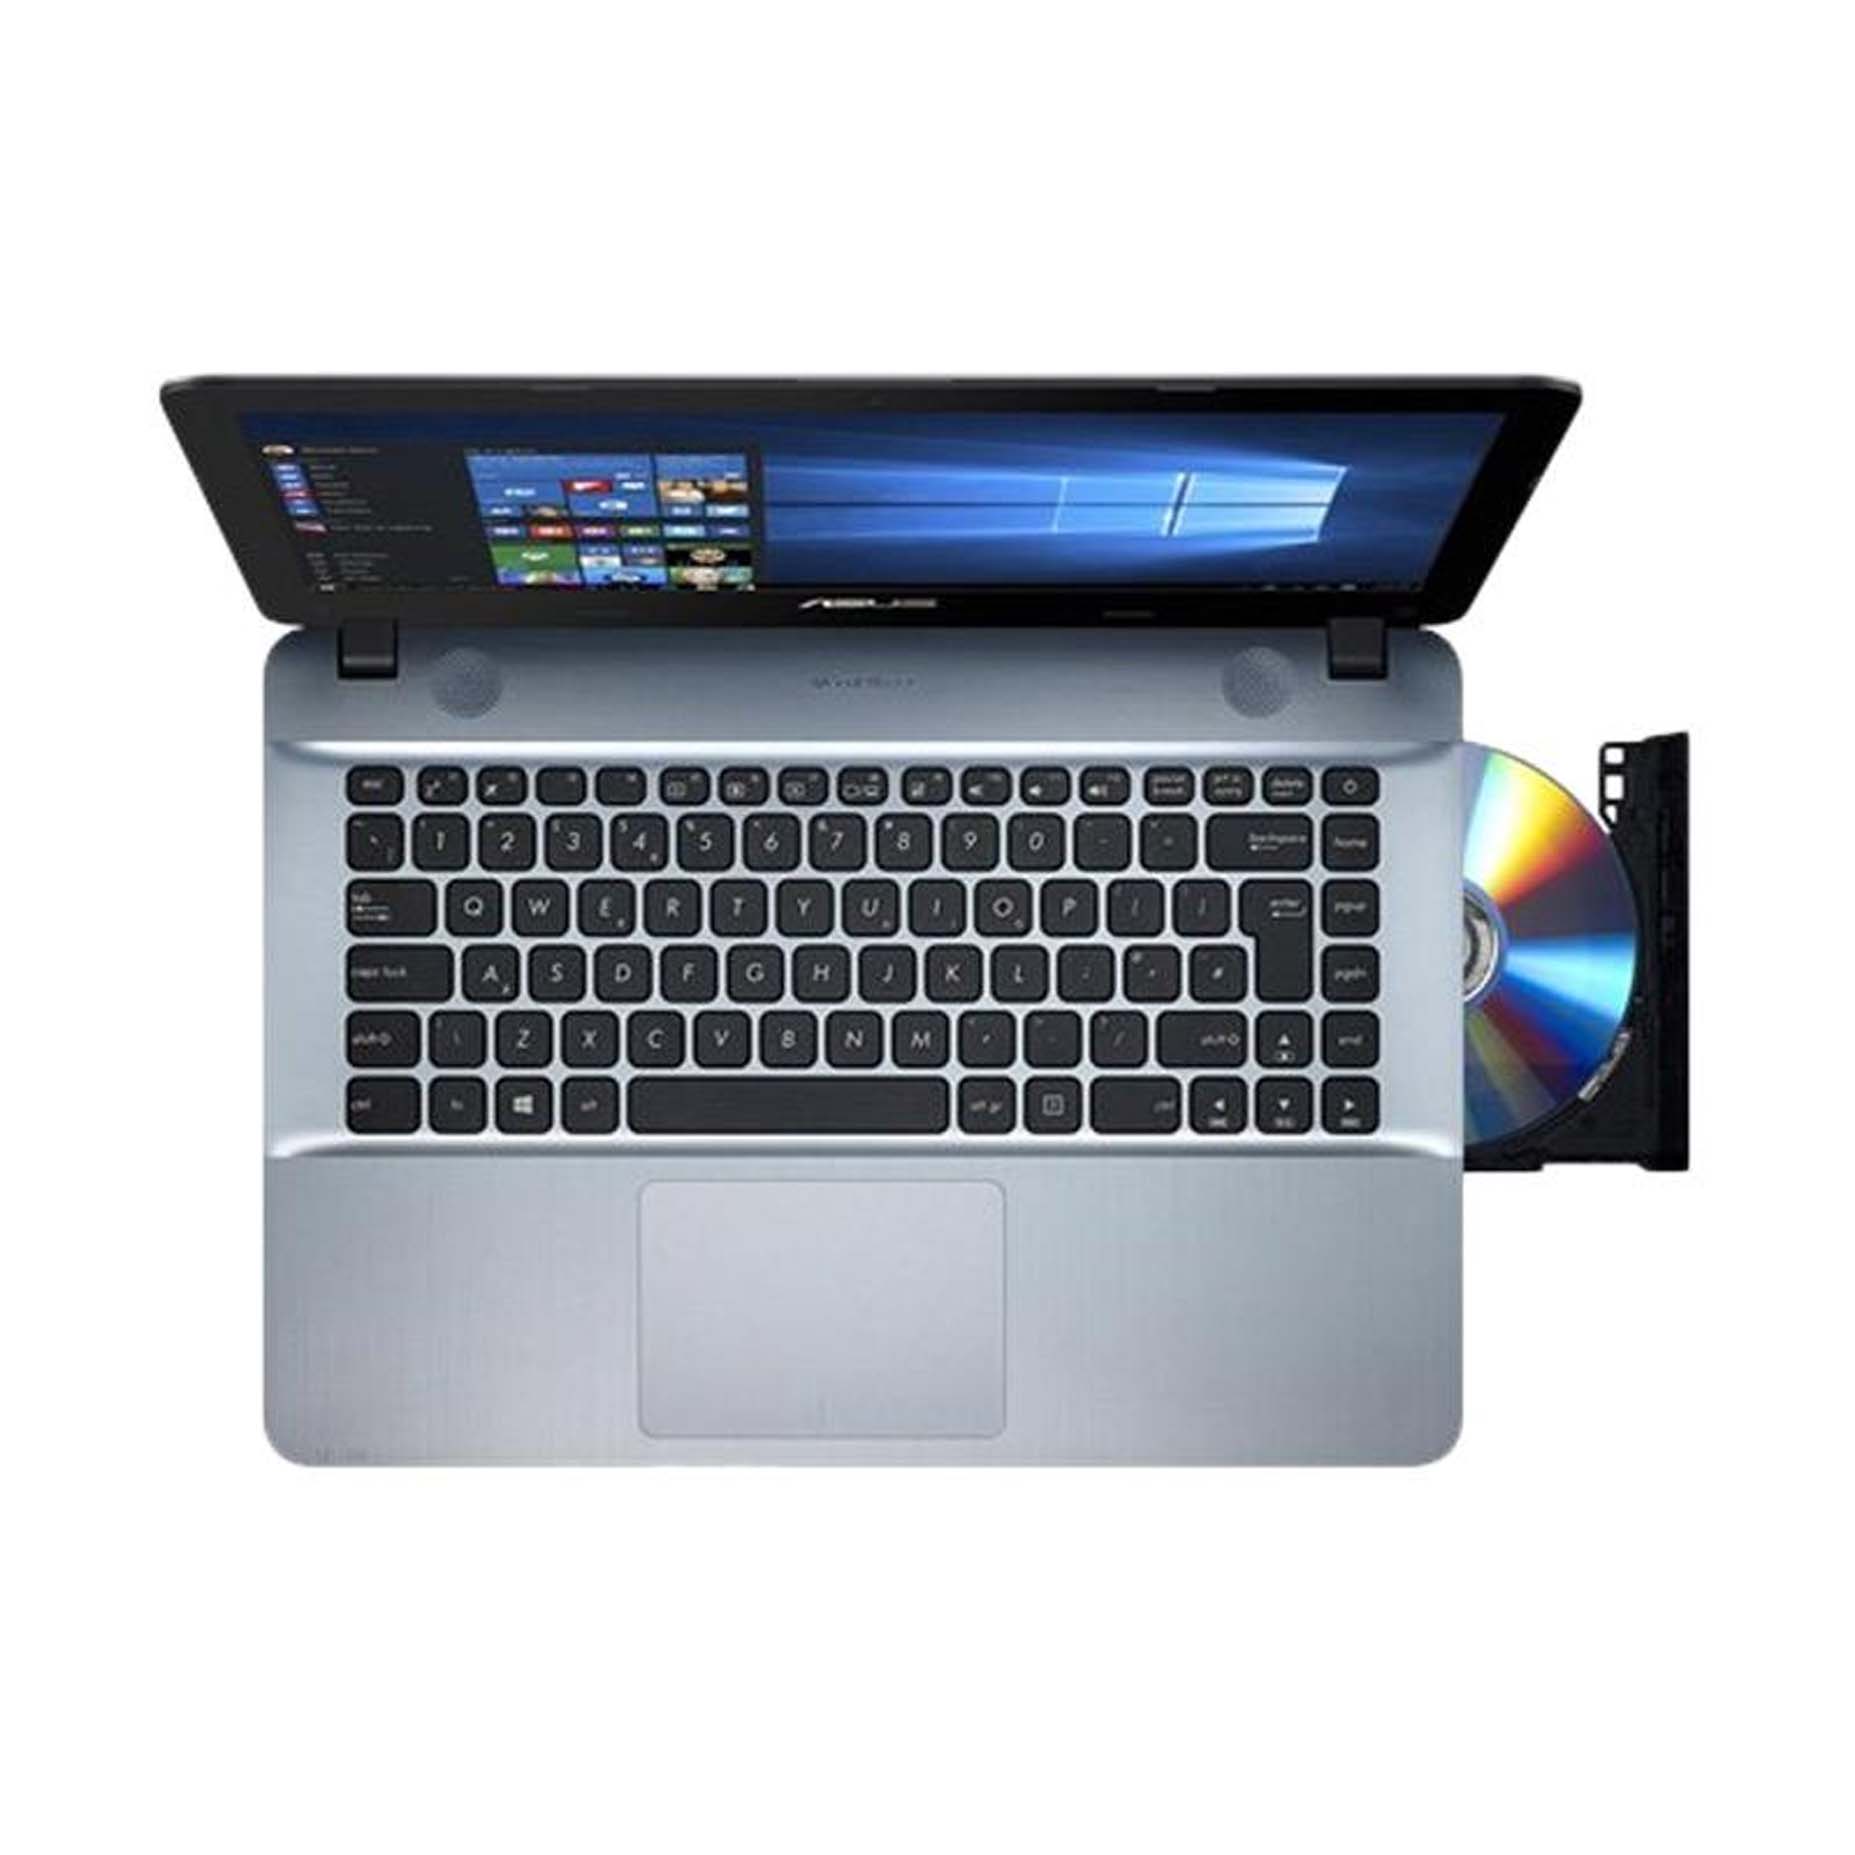 Harga Asus Notebook X441MA-GA012T Silver Intel Celeron N4000 4GB 1TB 14 inch Win 10